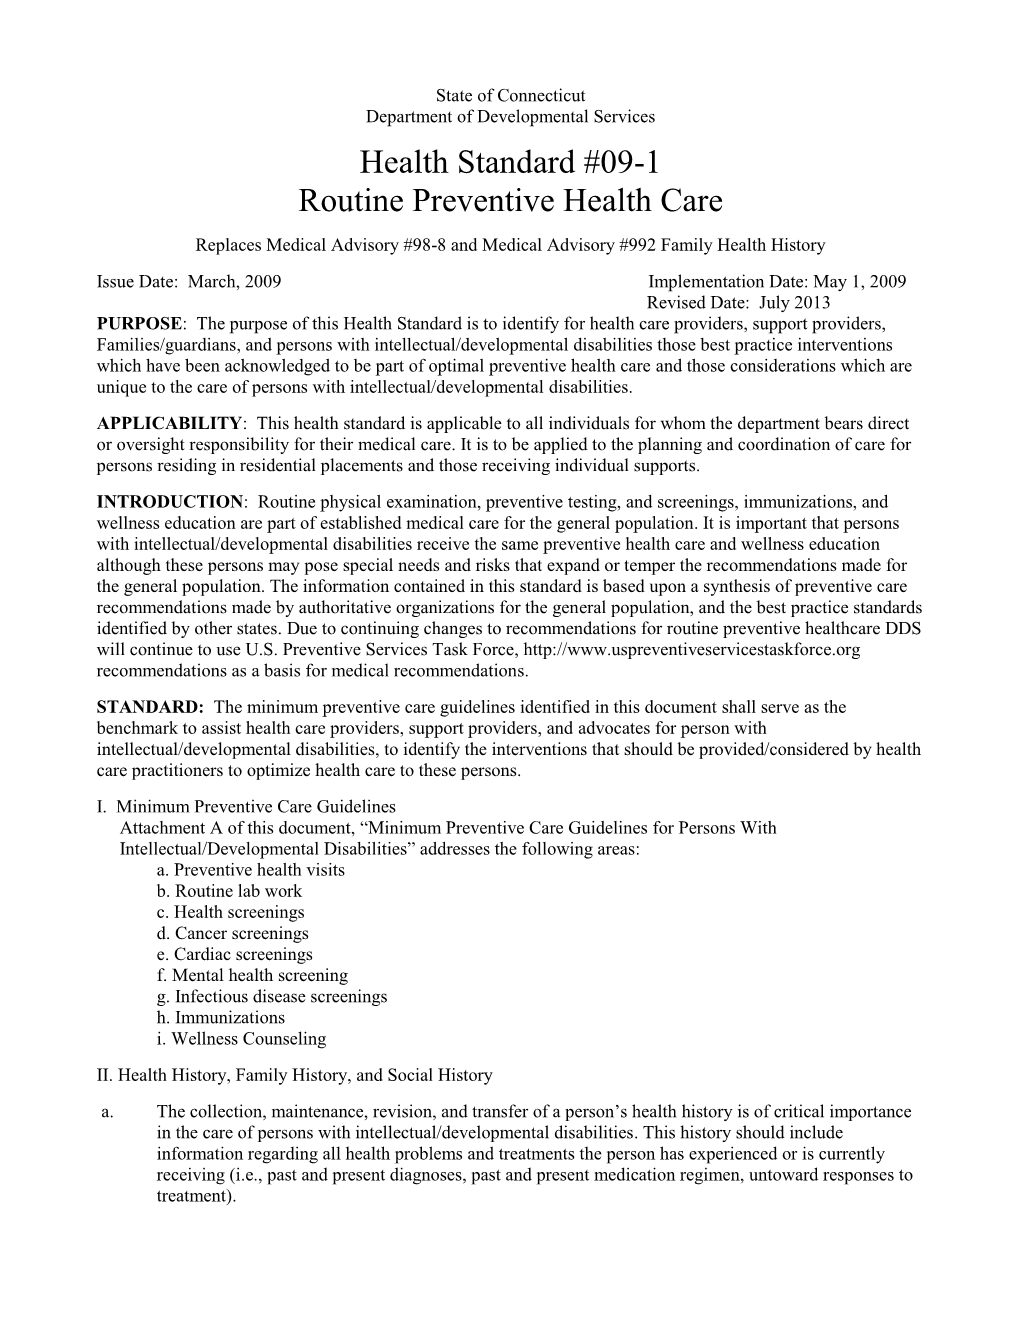 Routine Preventive Care Guidelines